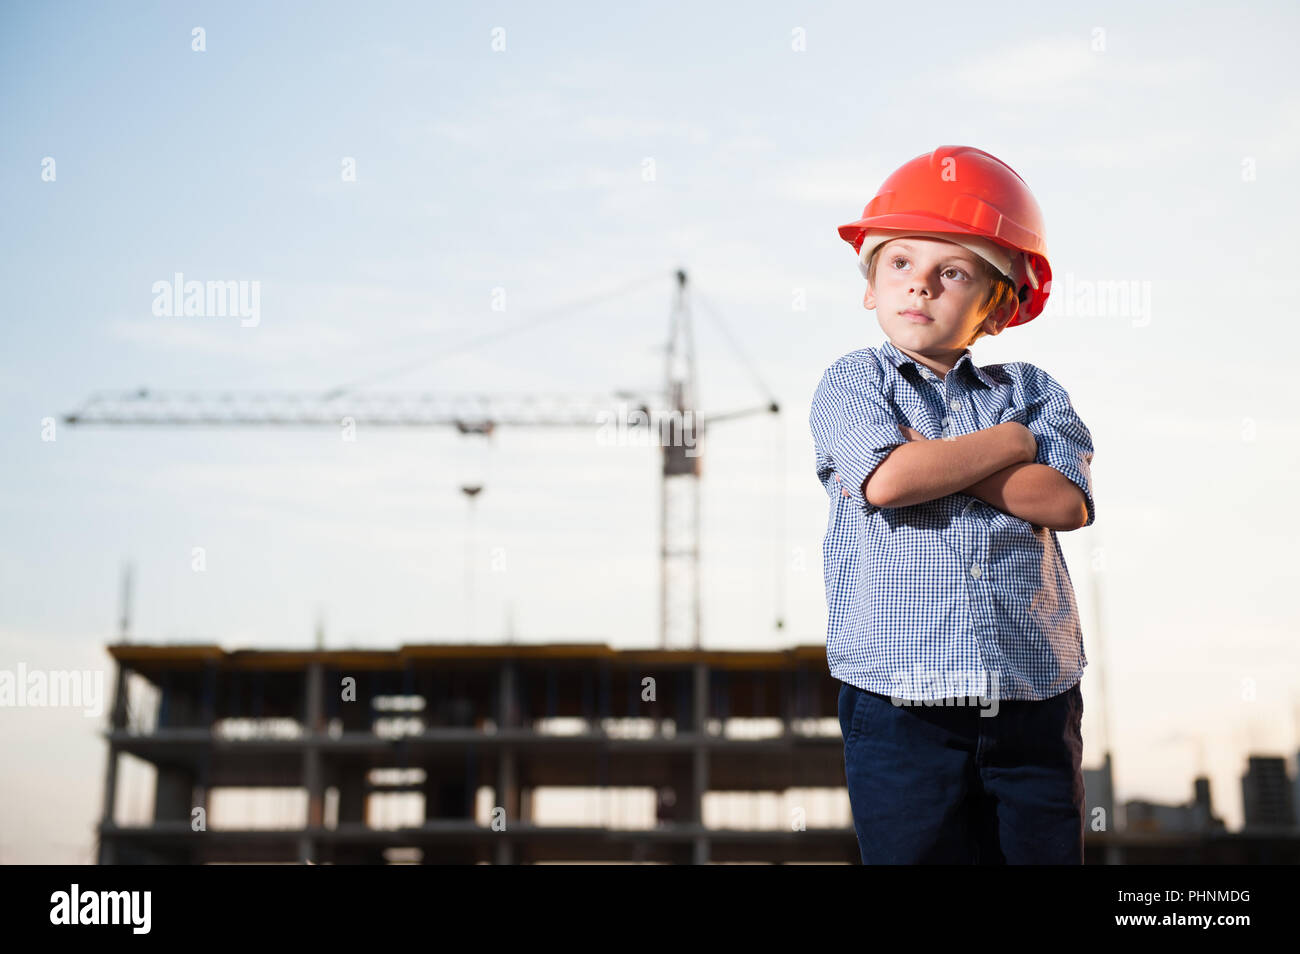 Stattlichen amerikanischen kaukasischen Kind in orange Helm auf der Baustelle mit Kran Stockfoto